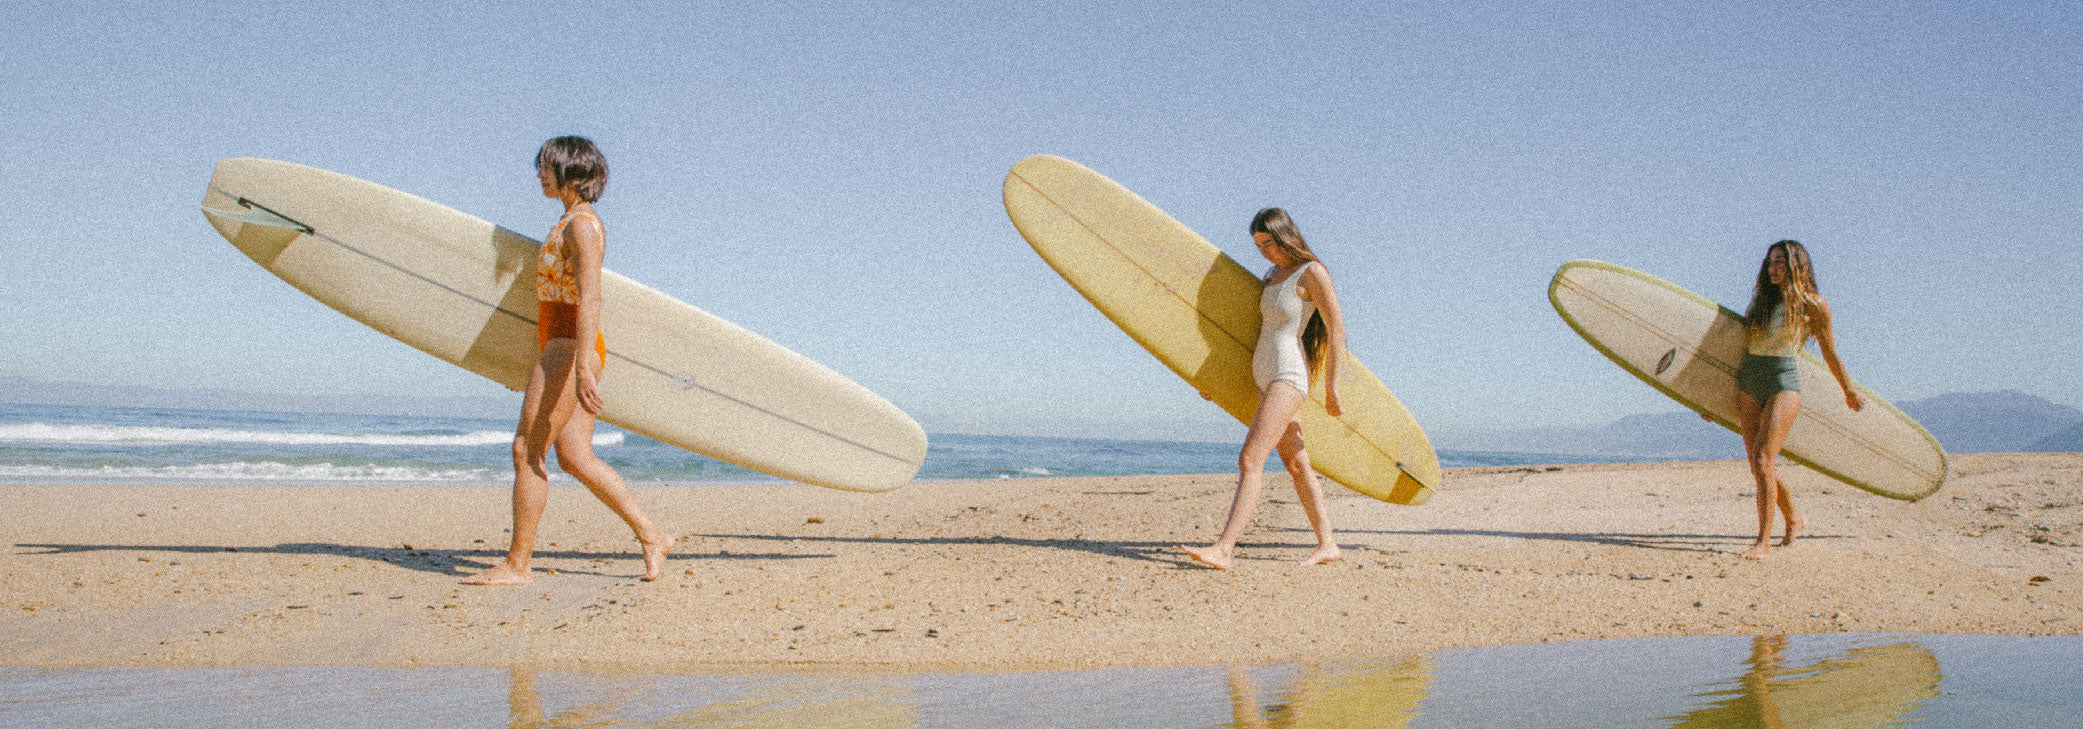 women surfing surf beach swimsuit Mexico surf trip walk longboard